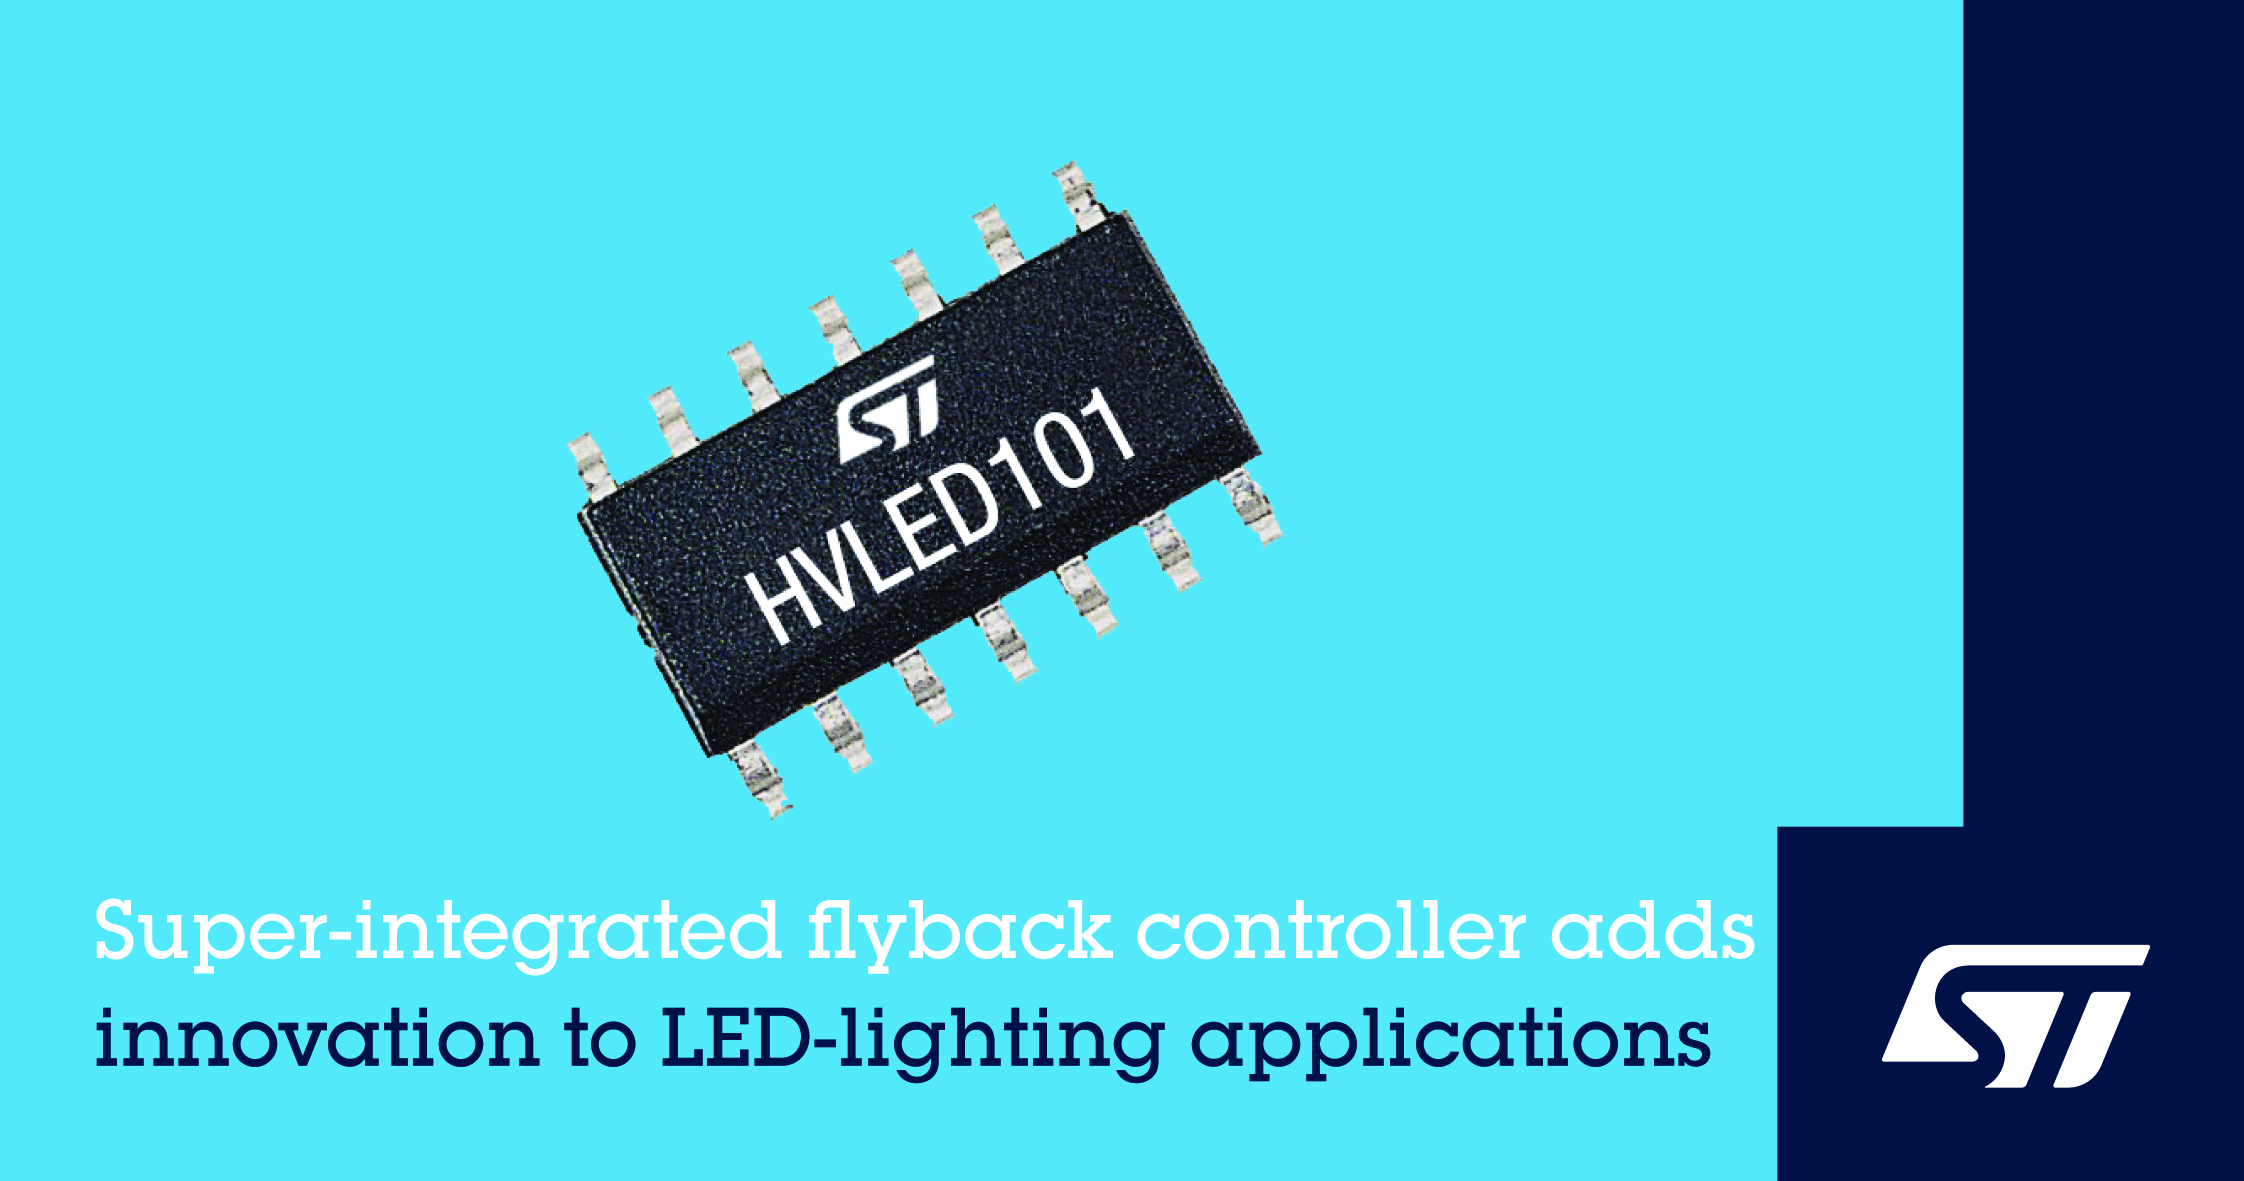 意法半导体发布集成先进功能的反激式控制器,提升LED照明性能